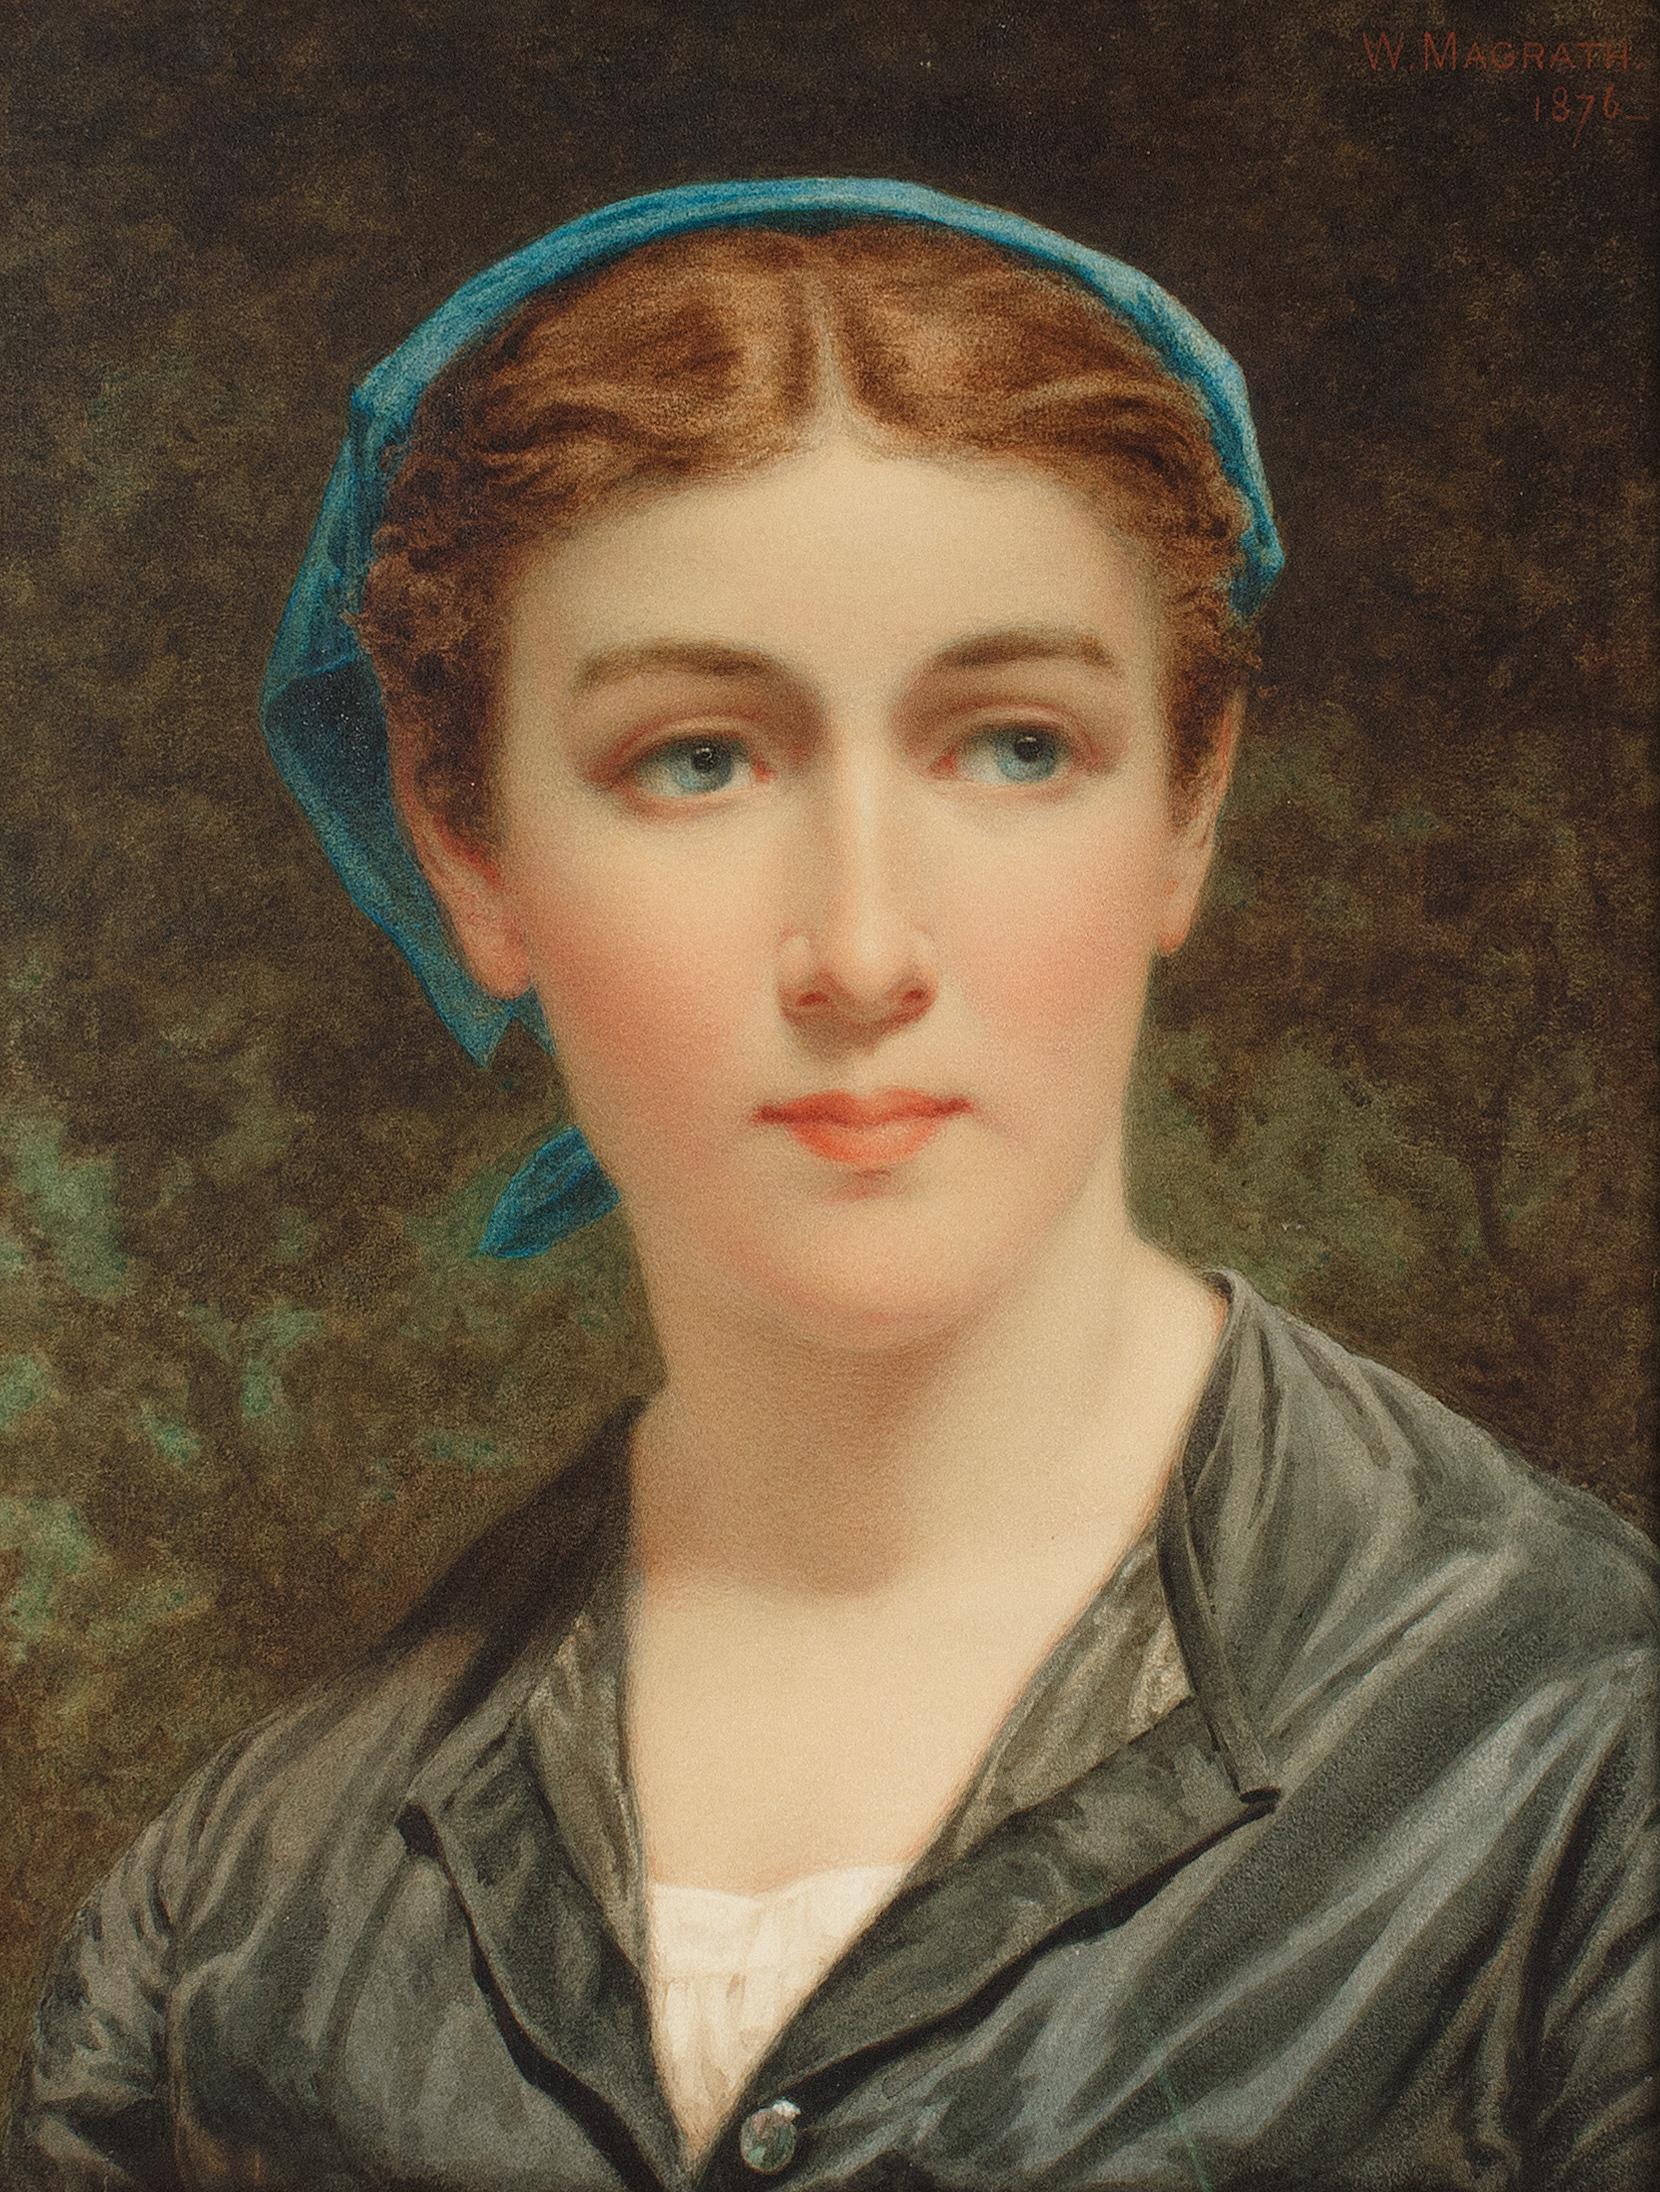 Woman with a Blue Kerchief: Aquarell der irischen Künstlerin Magrath – Art von William Magrath